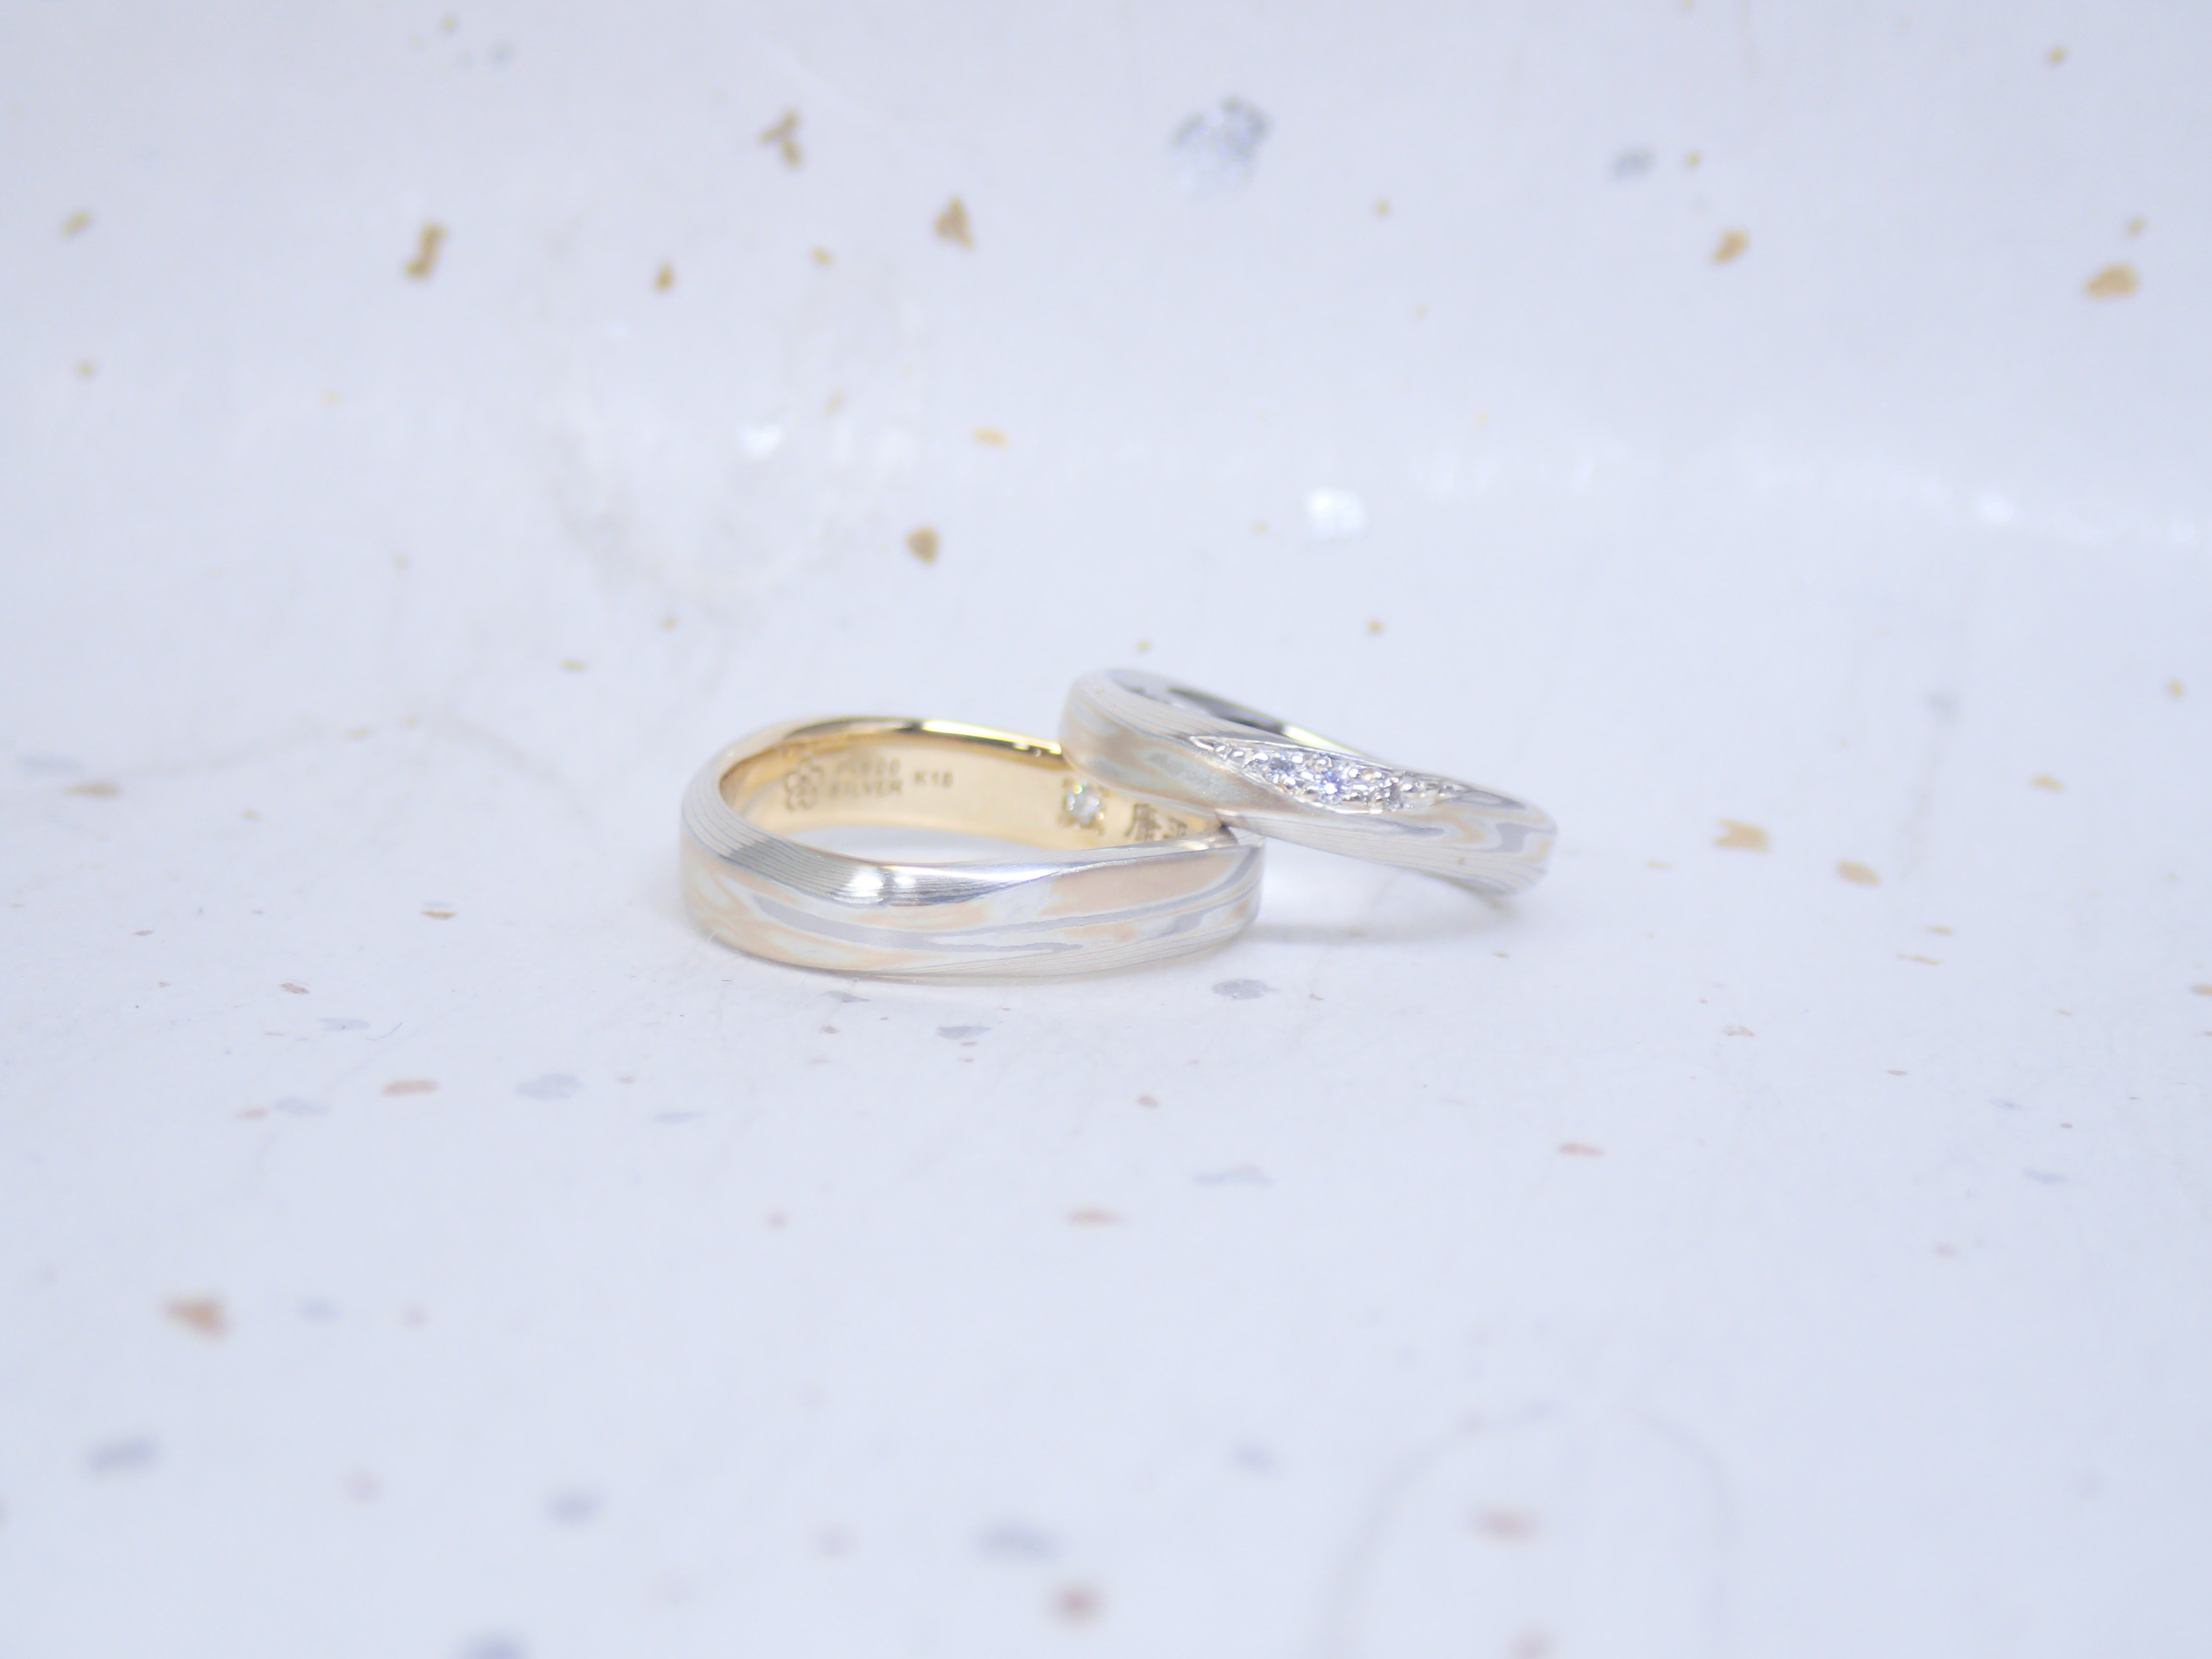 二人の想いをカタチにする結婚指輪・婚約指輪。世界に1つだけをオーダーメイド。結婚指輪・婚約指輪の杢目金屋